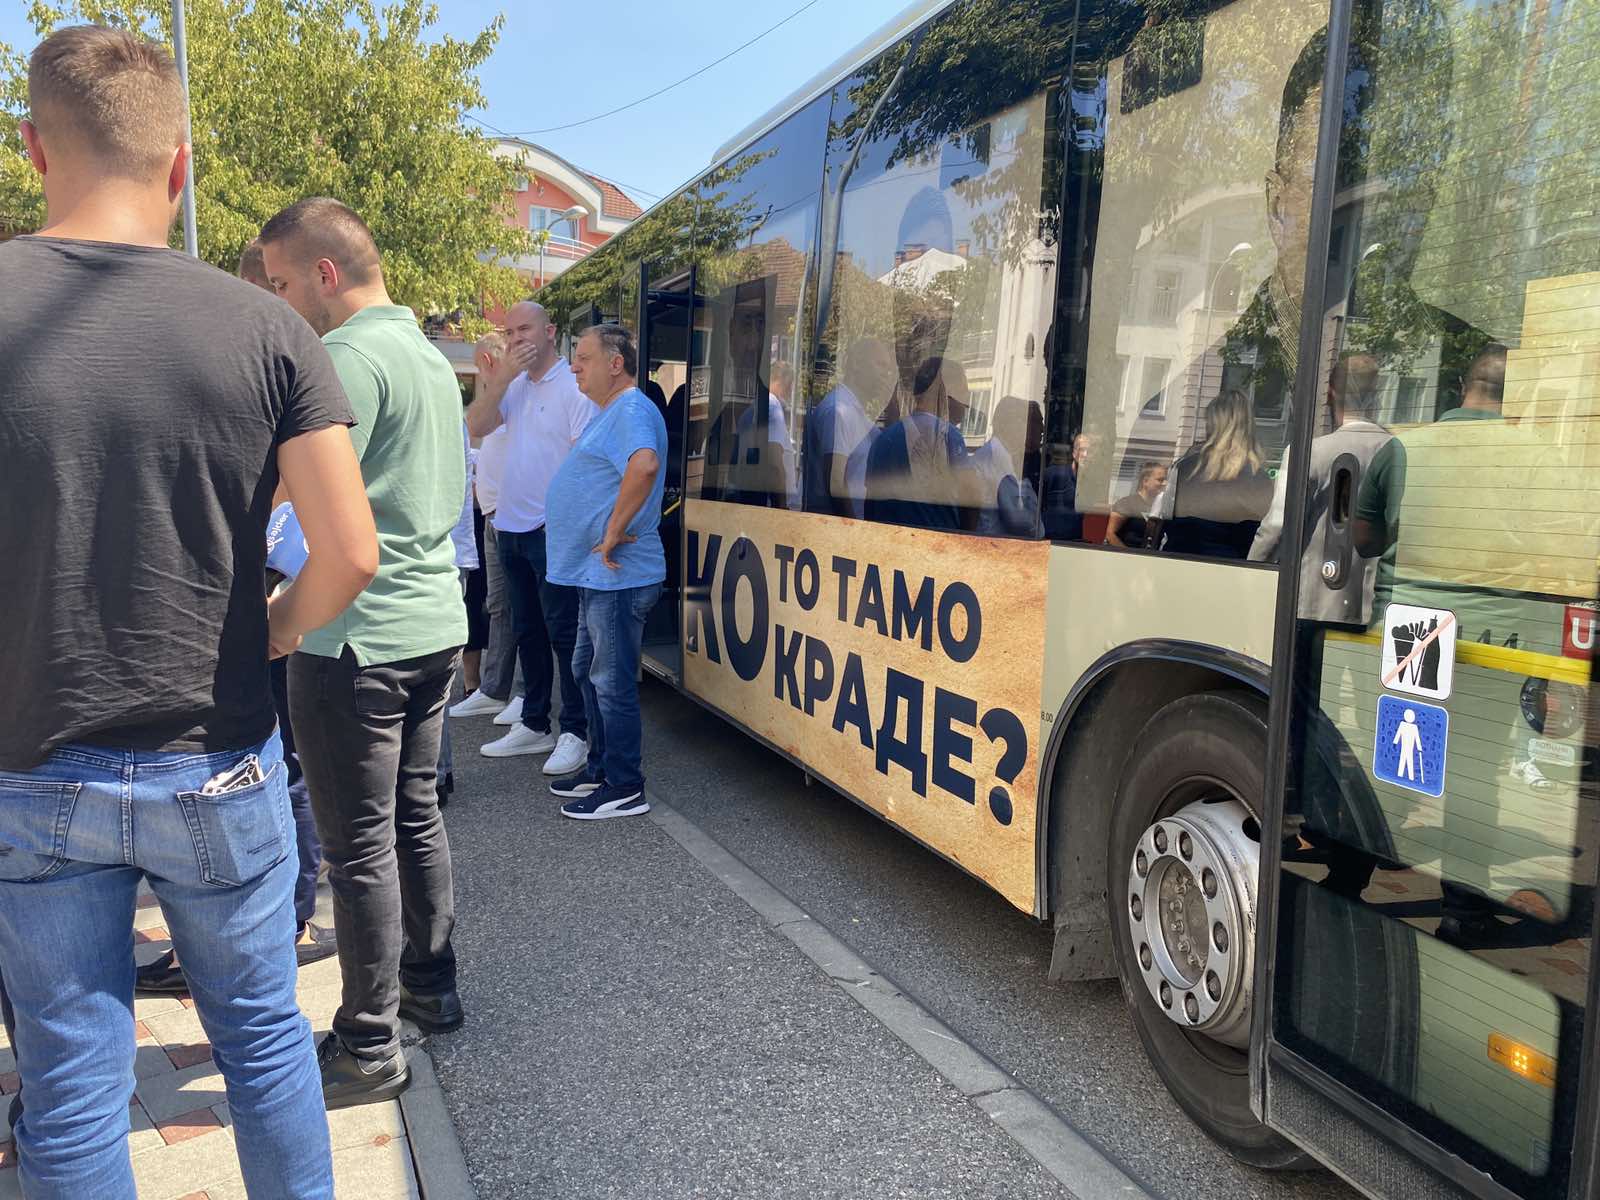  Stanivuković se busom s natpisom "Ko to tamo krade" dovezao ispred sjedišta SNSD-a (FOTO, VIDEO) 